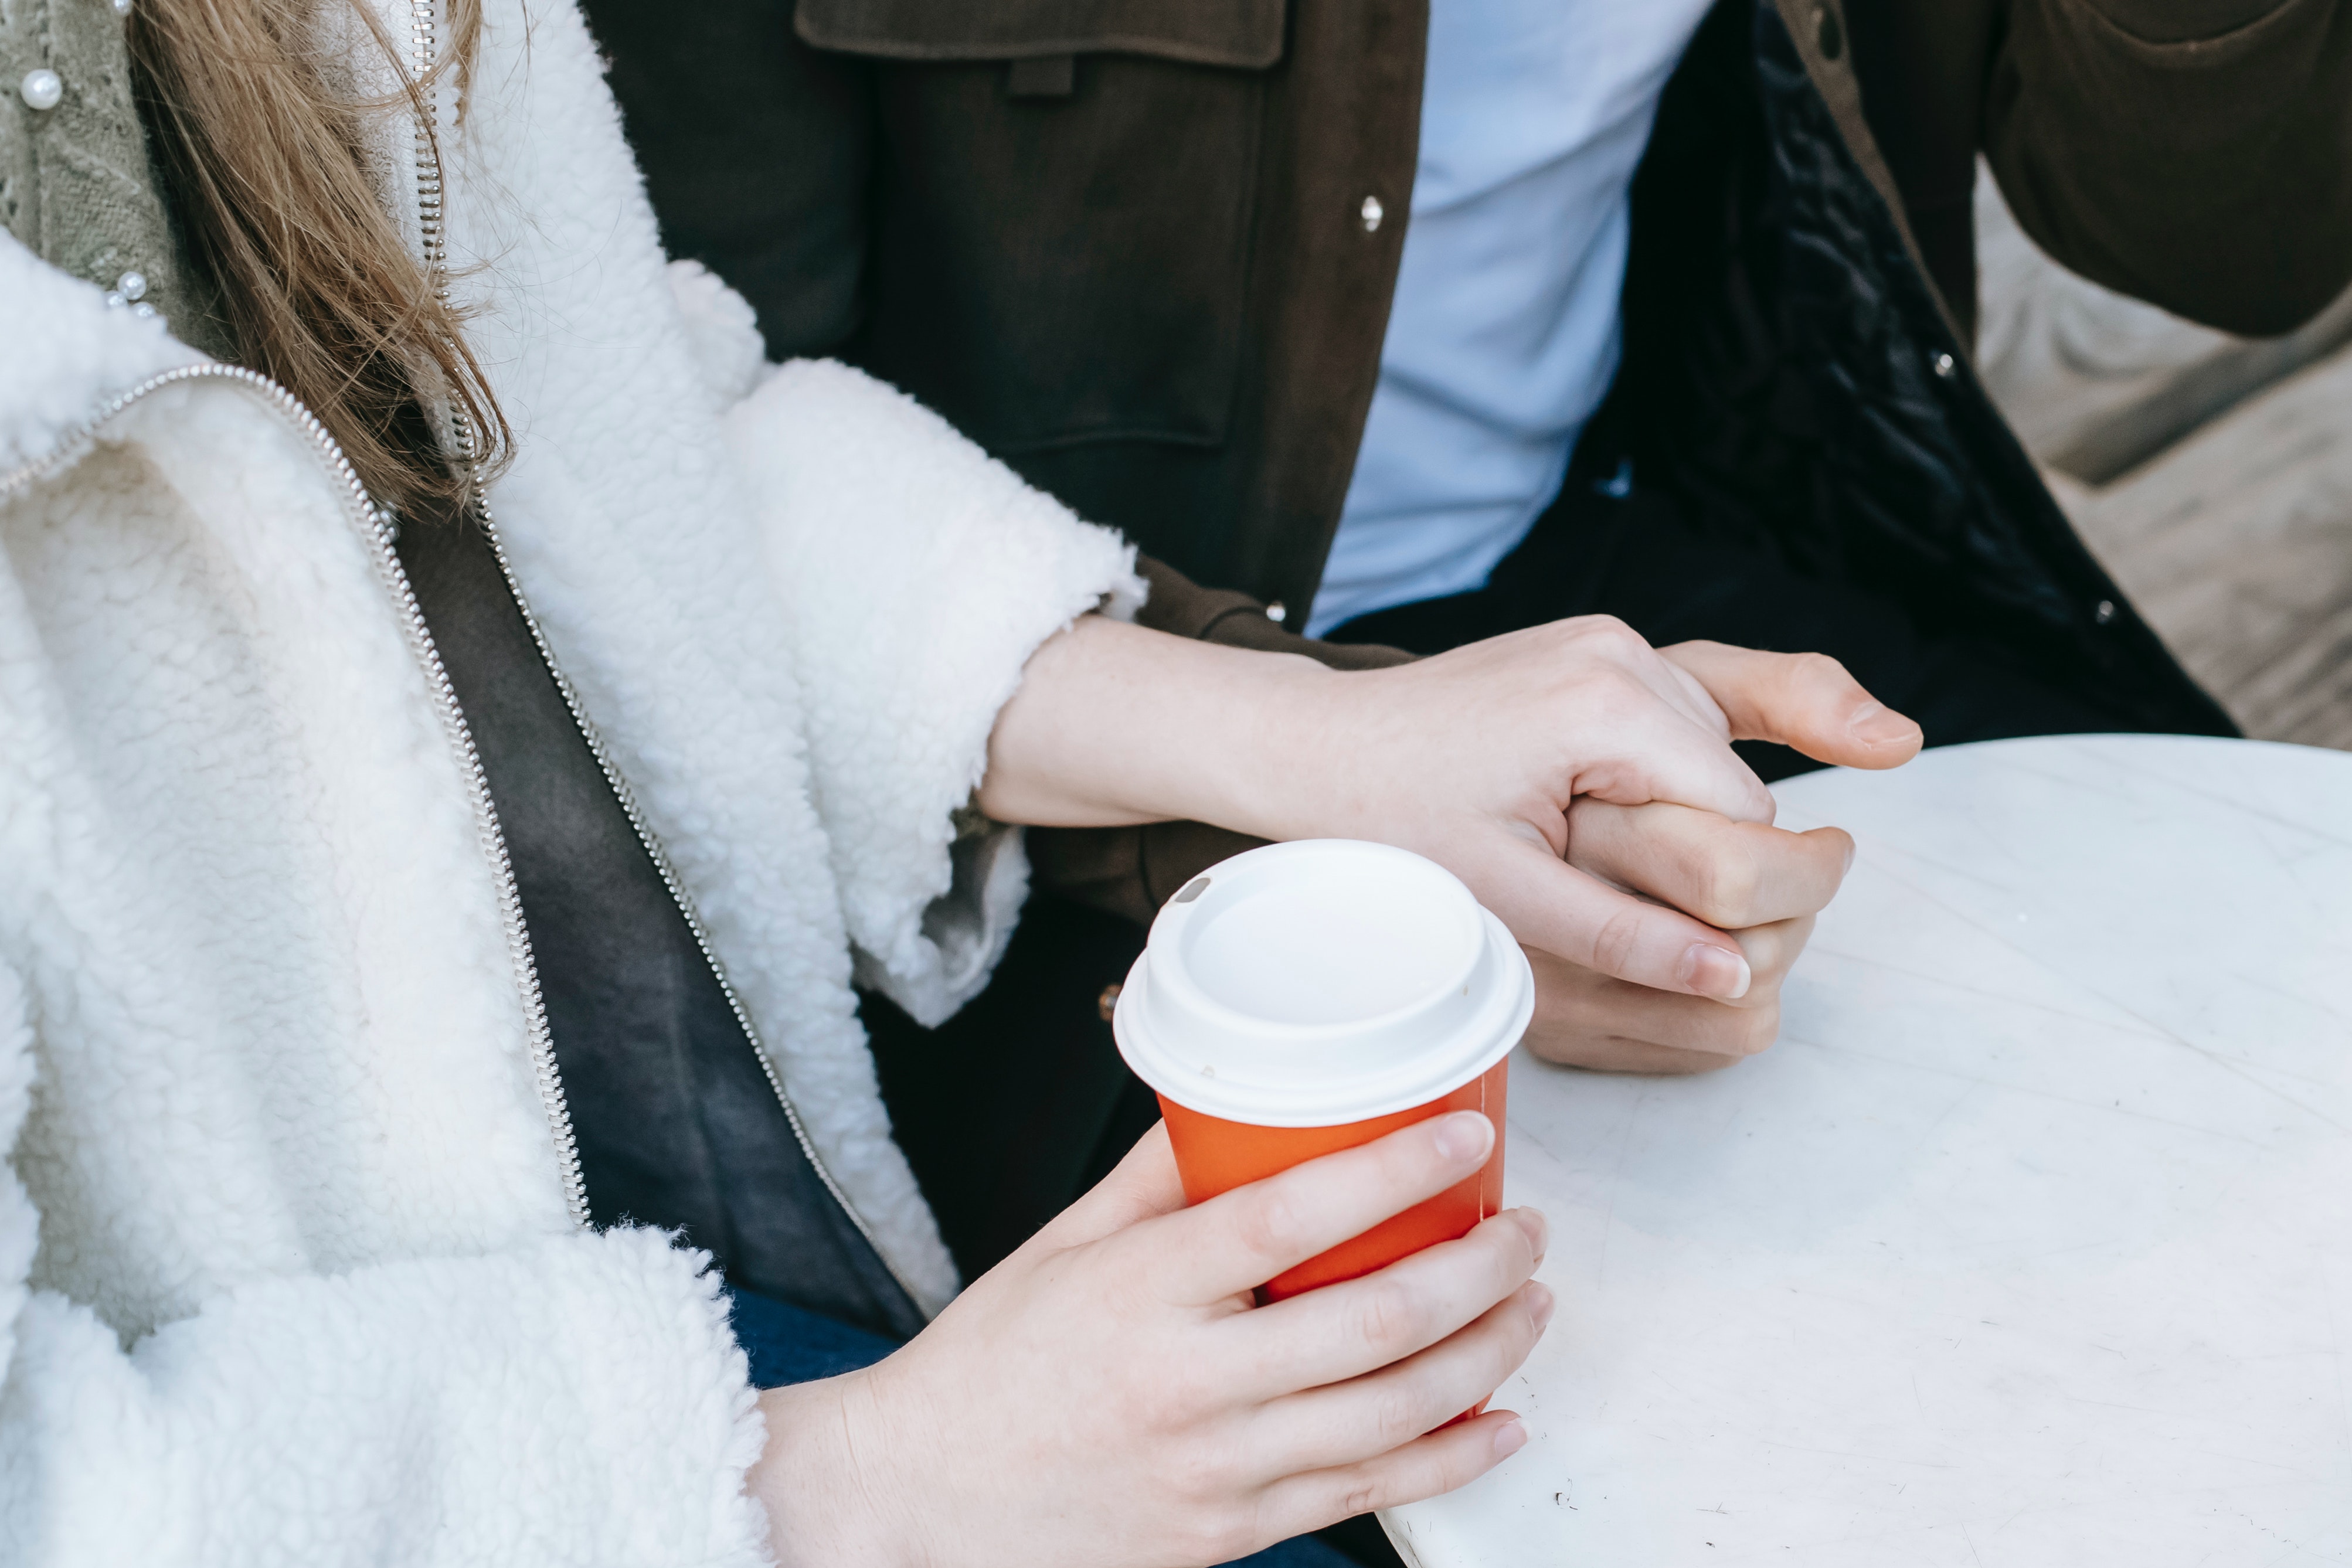 Et par som holder hender. De sitter ved et bord, og damen har venstrehånd rundt en takeaway kaffekopp.